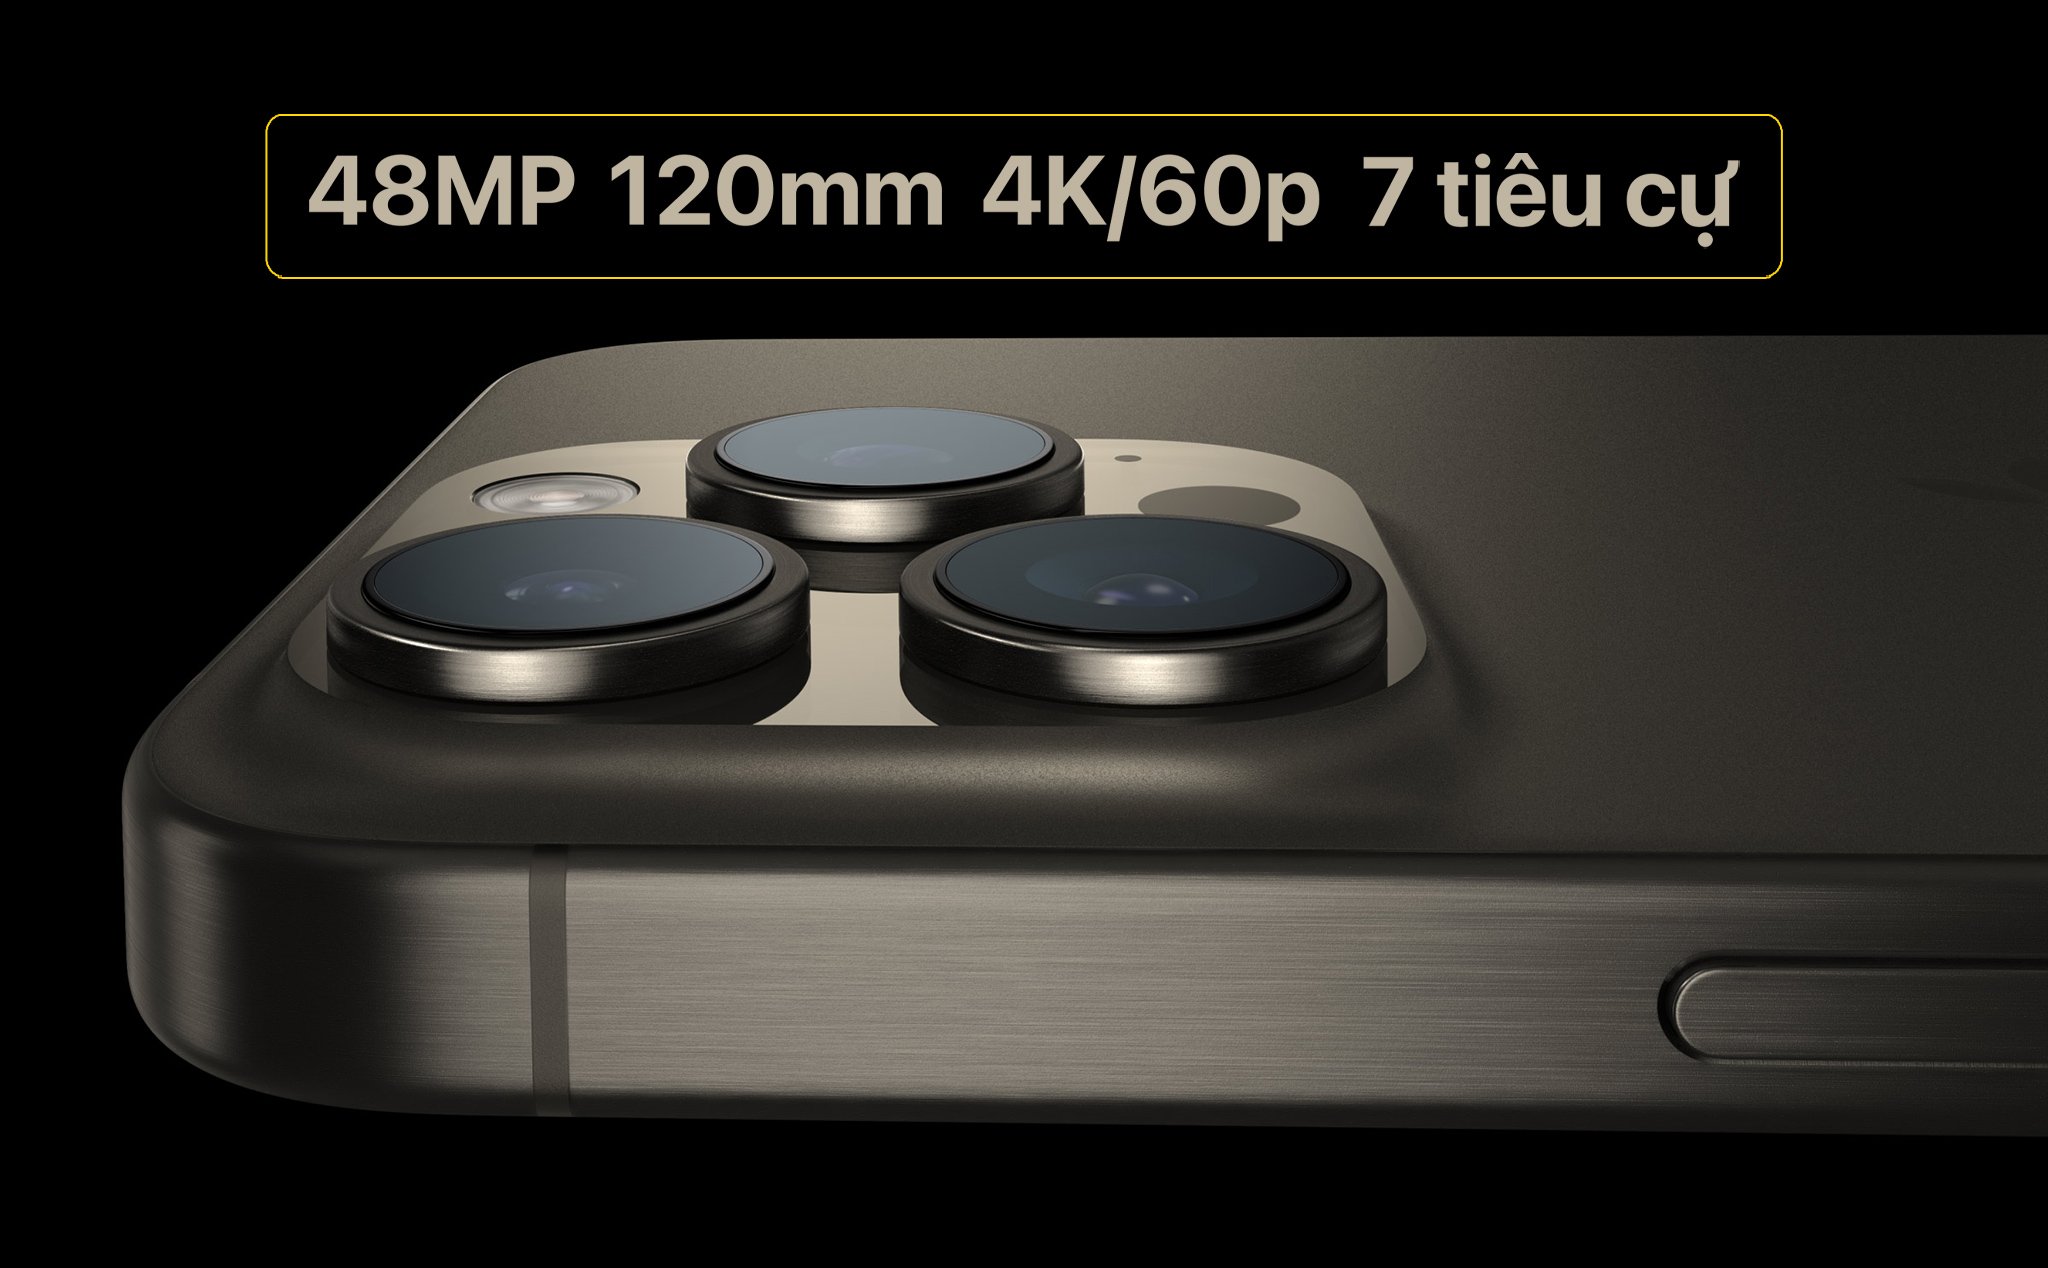 Chi tiết camera iPhone 15 Pro/Pro Max: Có đến 7 tiêu cự khác nhau, zoom quang 120mm